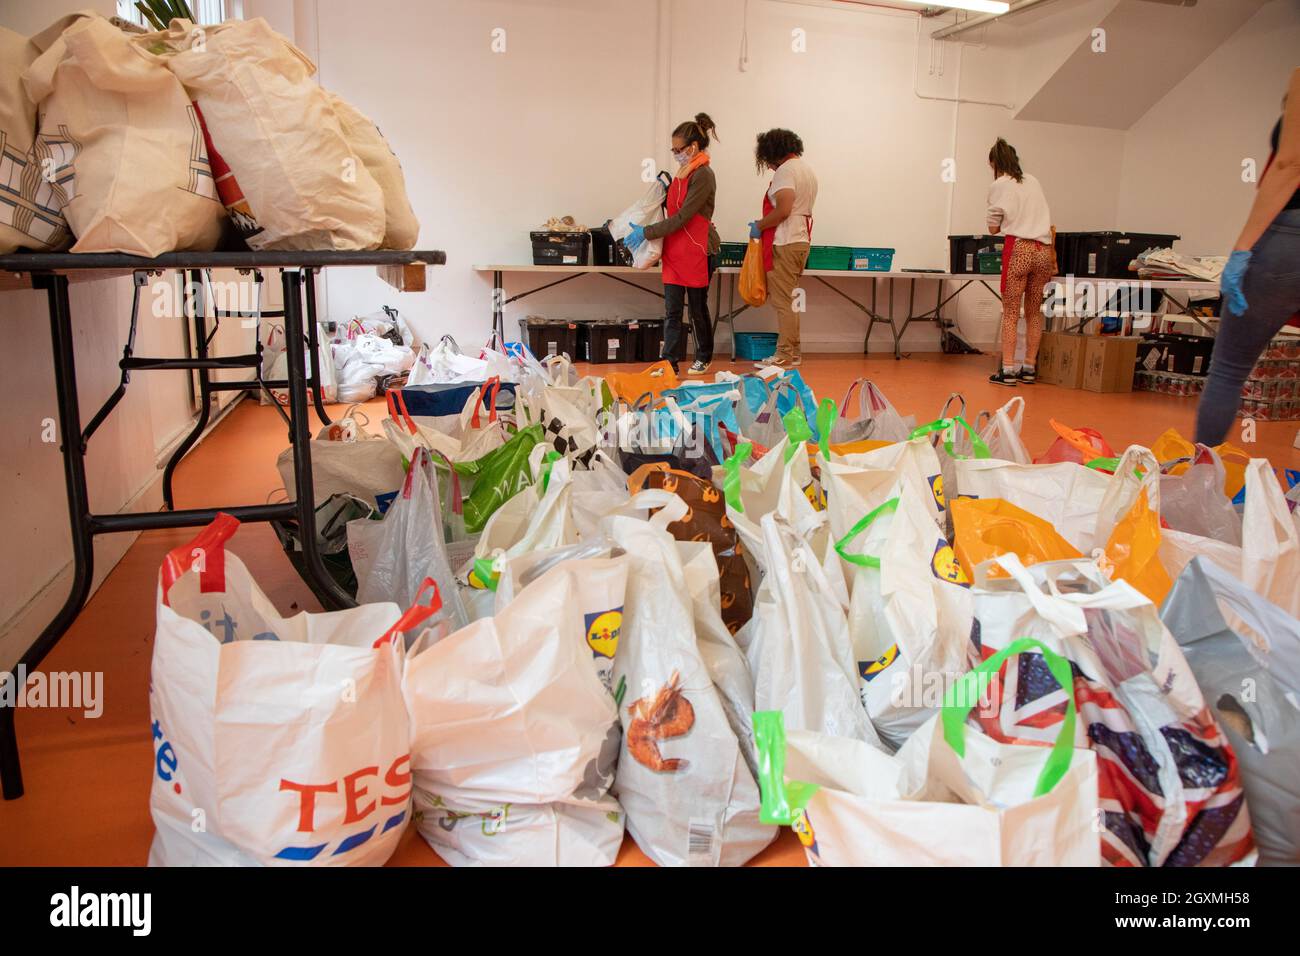 Des bénévoles dans une banque alimentaire triant des caisses de nourriture en vue des distribuer aux membres de la communauté locale dans le besoin. Ils sont au G Banque D'Images